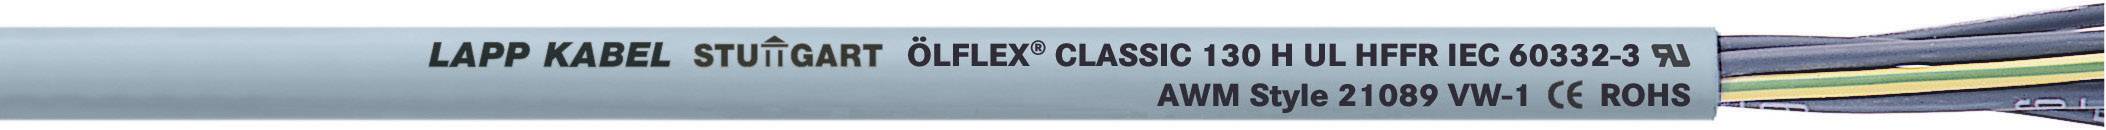 LAPP ÖLFLEX CLASSIC 130 H Steuerleitung 3 G 2.50 mm² Grau 1123140-1000 1000 m